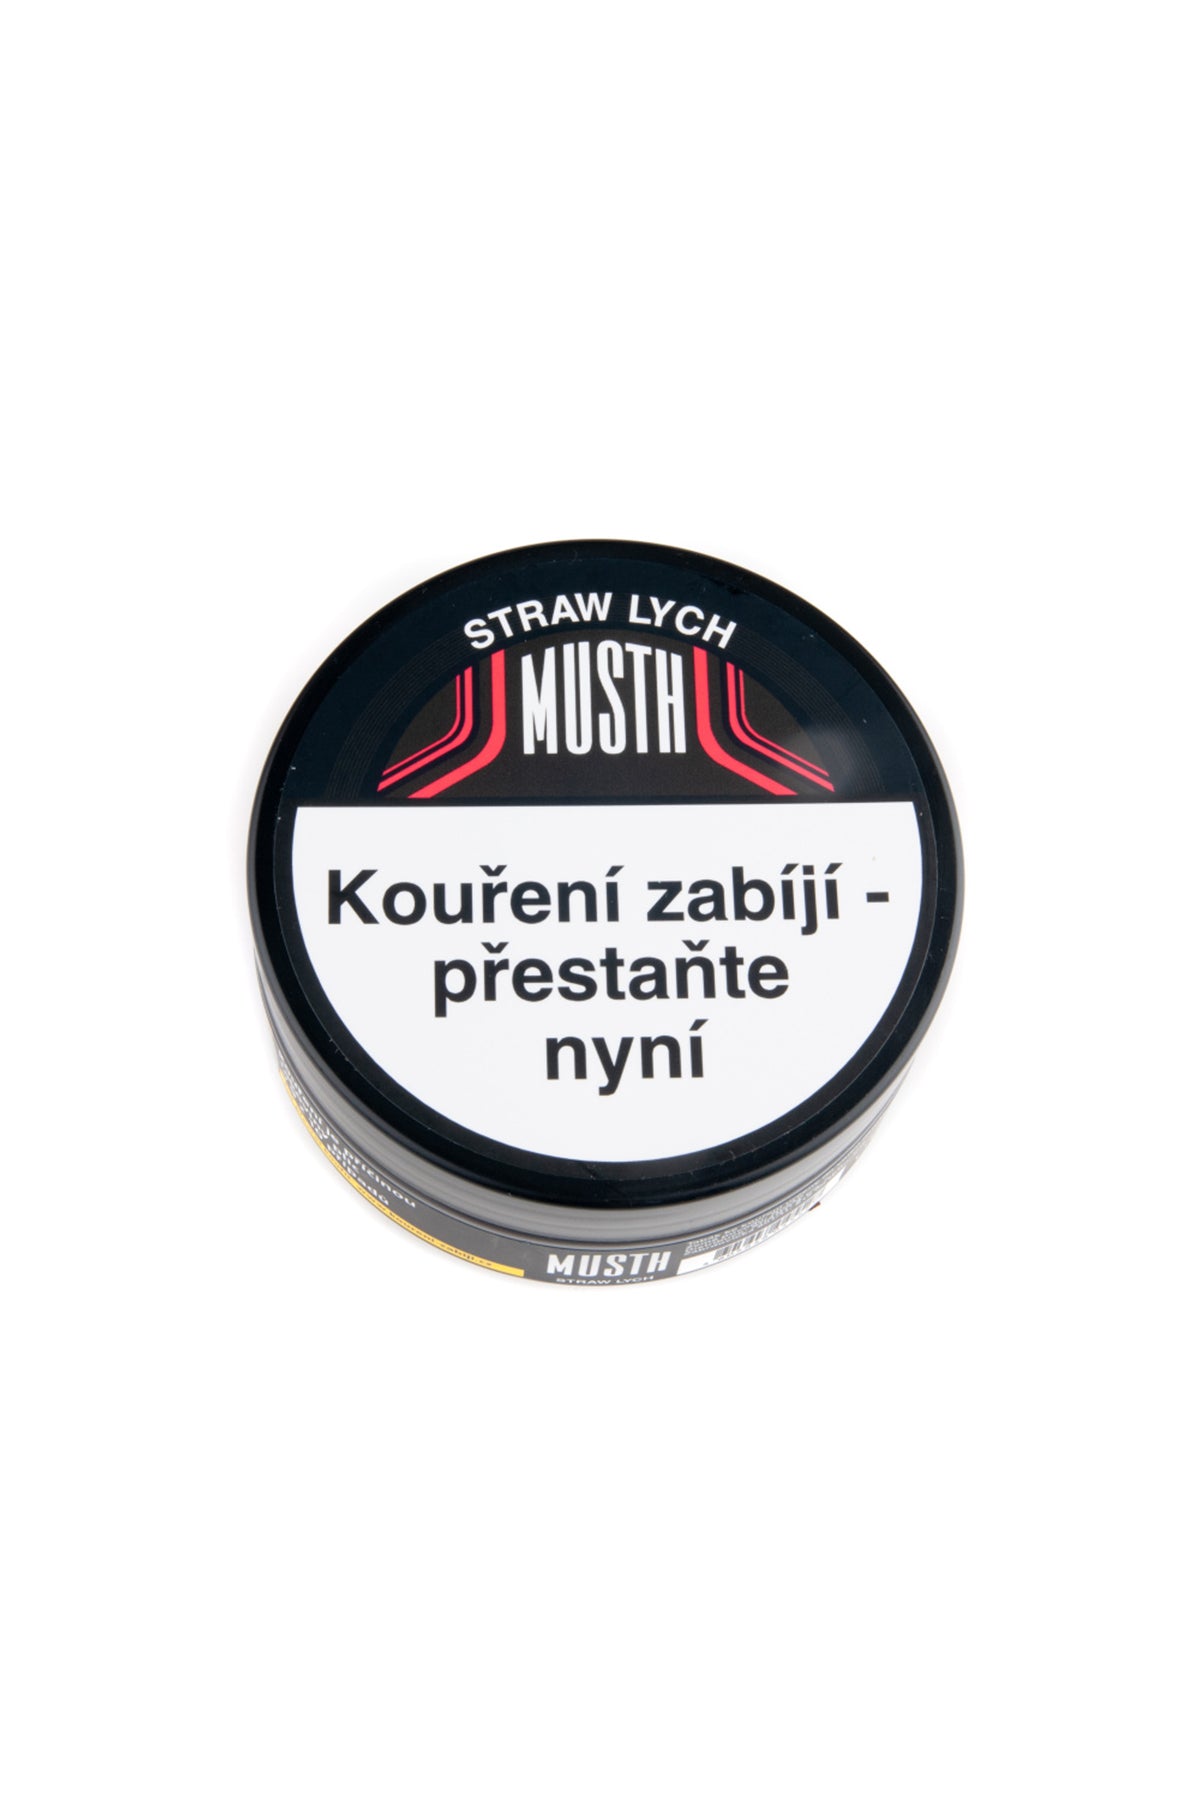 Tabák - MustH 125g - Straw Lych